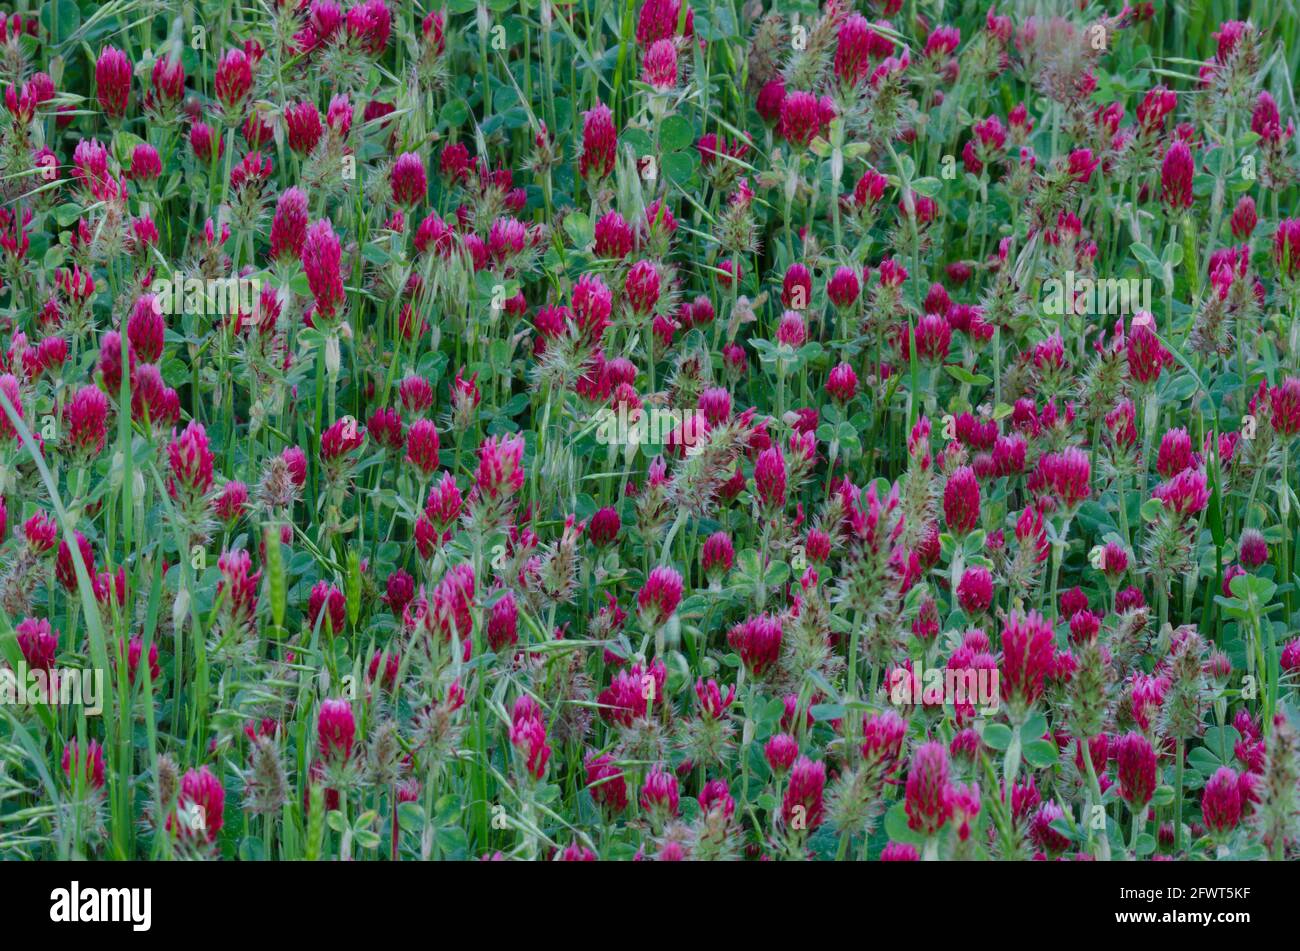 Crimson Clover, Trifolium incarnatum Stock Photo